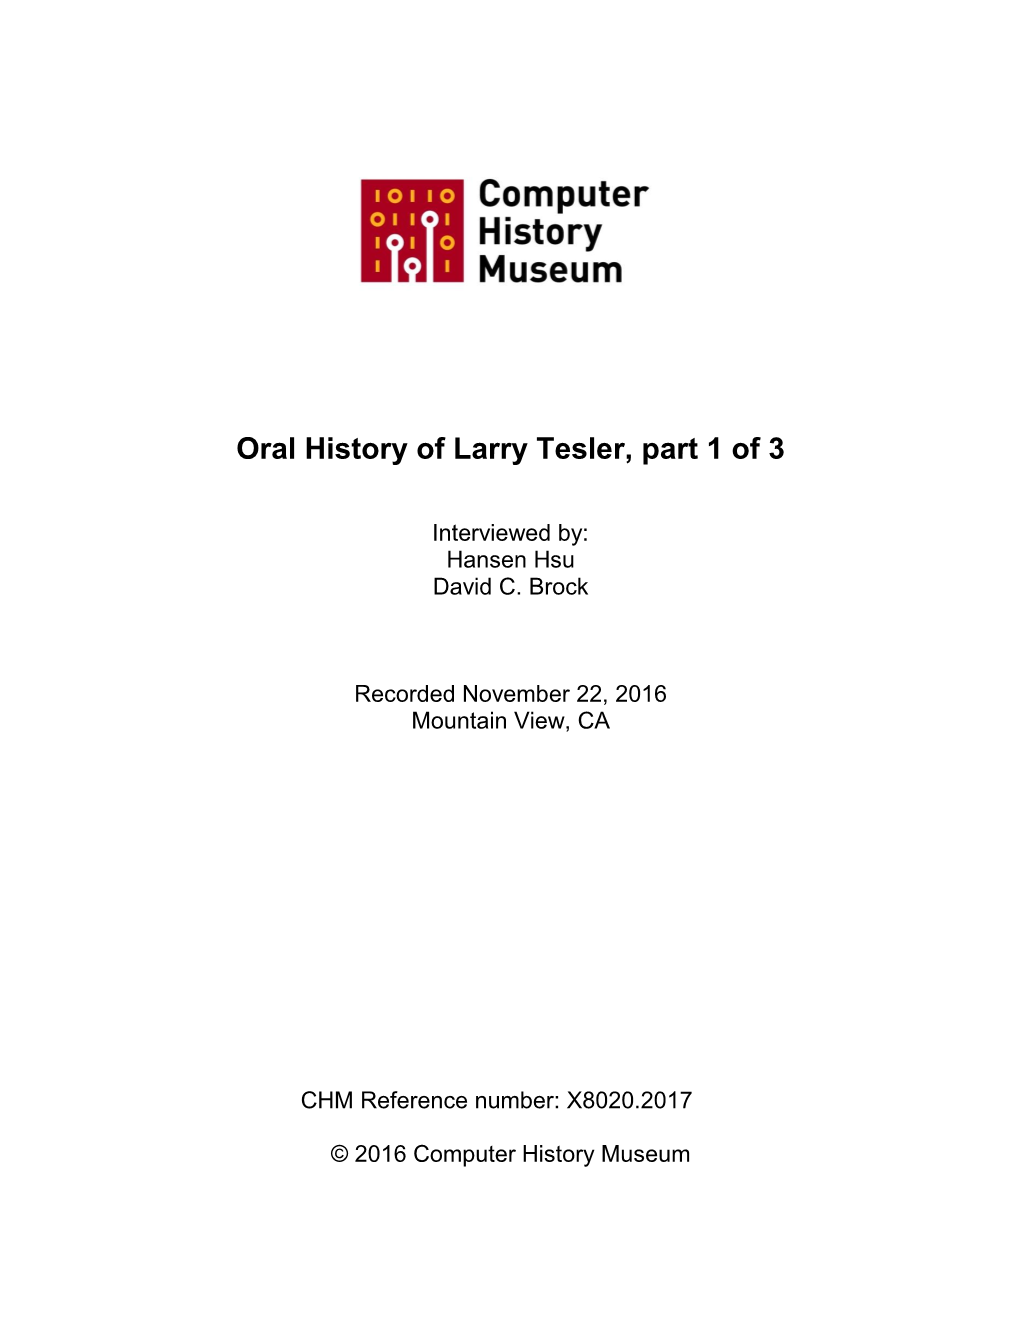 Oral History of Larry Tesler, Part 1 of 3